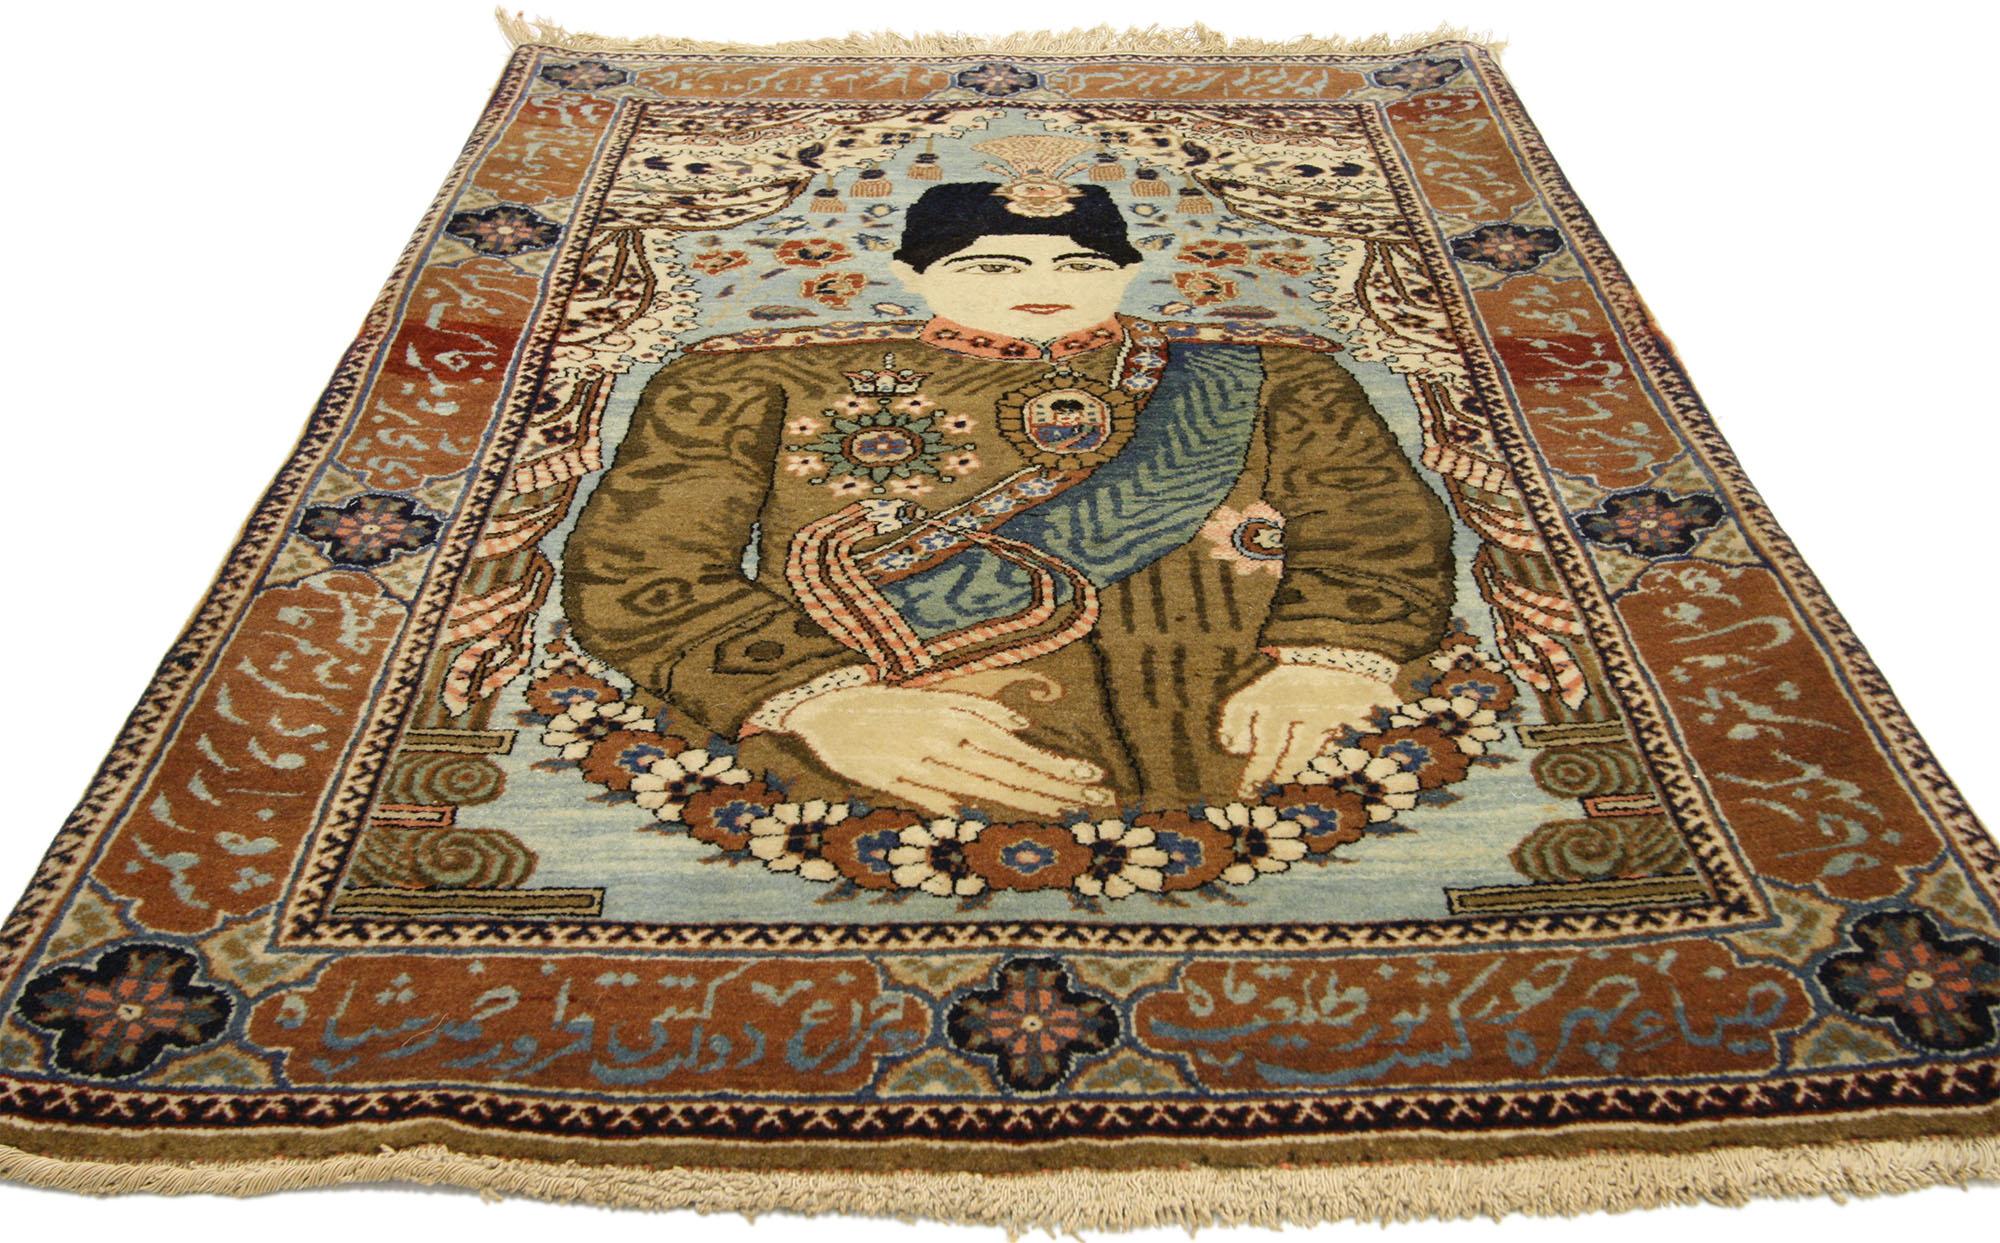 77162 Antiker persischer Mohtasham Kashan Bildteppich, 02'00 x 03'00. 
Signiert von dem geschätzten Meisterweber Mohtasham Kashan, sehen Sie diesen exquisiten handgeknüpften antiken Kashan Bildteppich aus Wolle. Ein wahres Meisterwerk, das stolz das